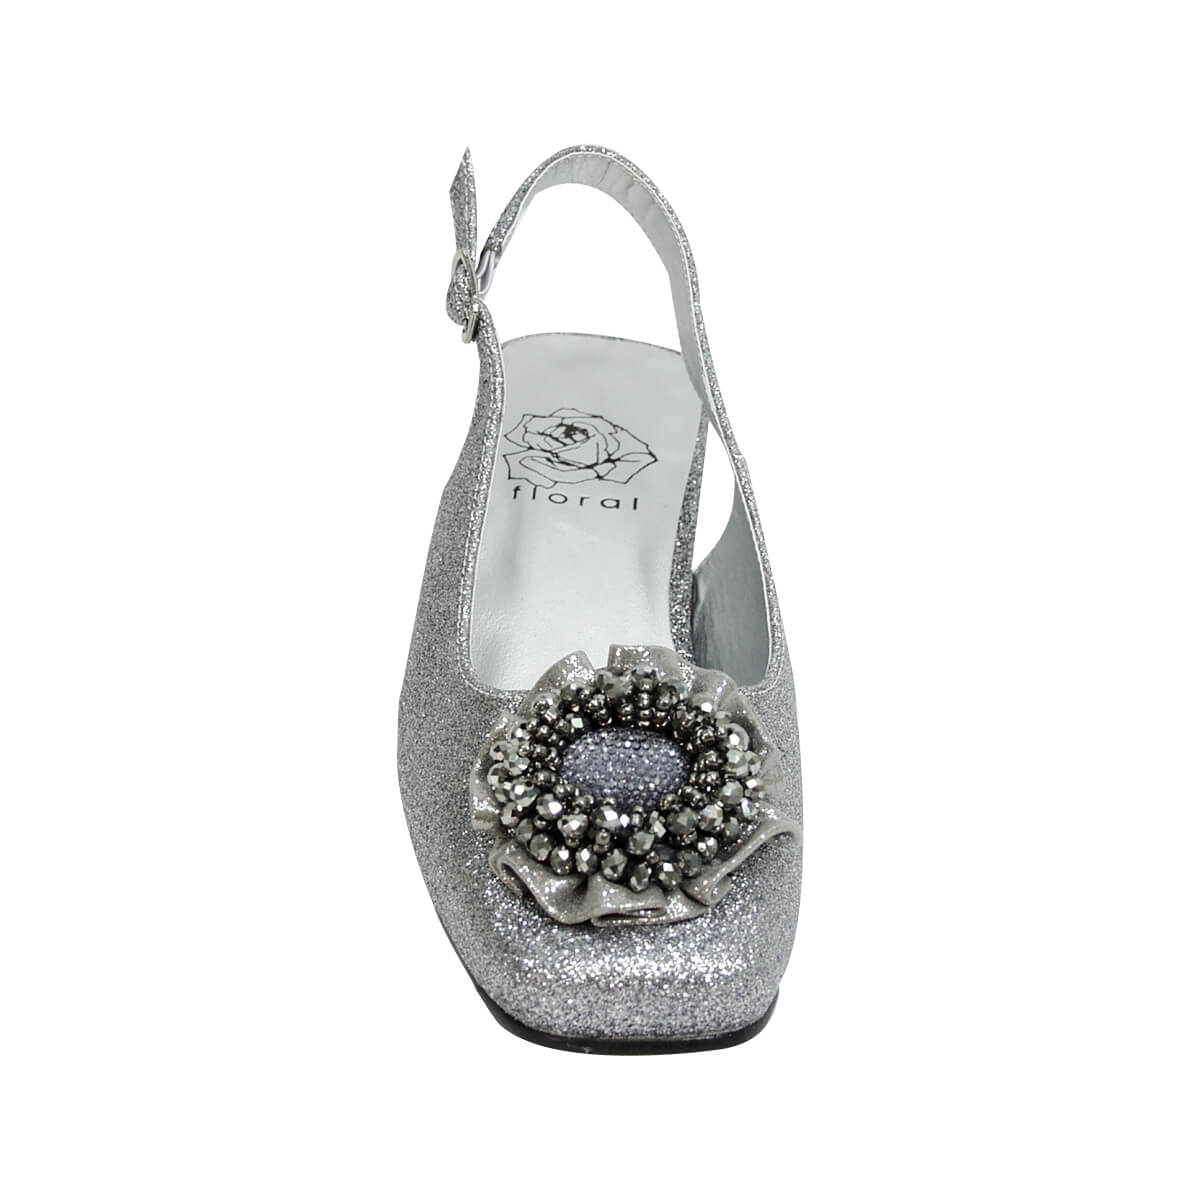 Women's Silver Dress Shoes Low Heel Sandals Wedding Rhinestone Open Toe  Strappy | eBay